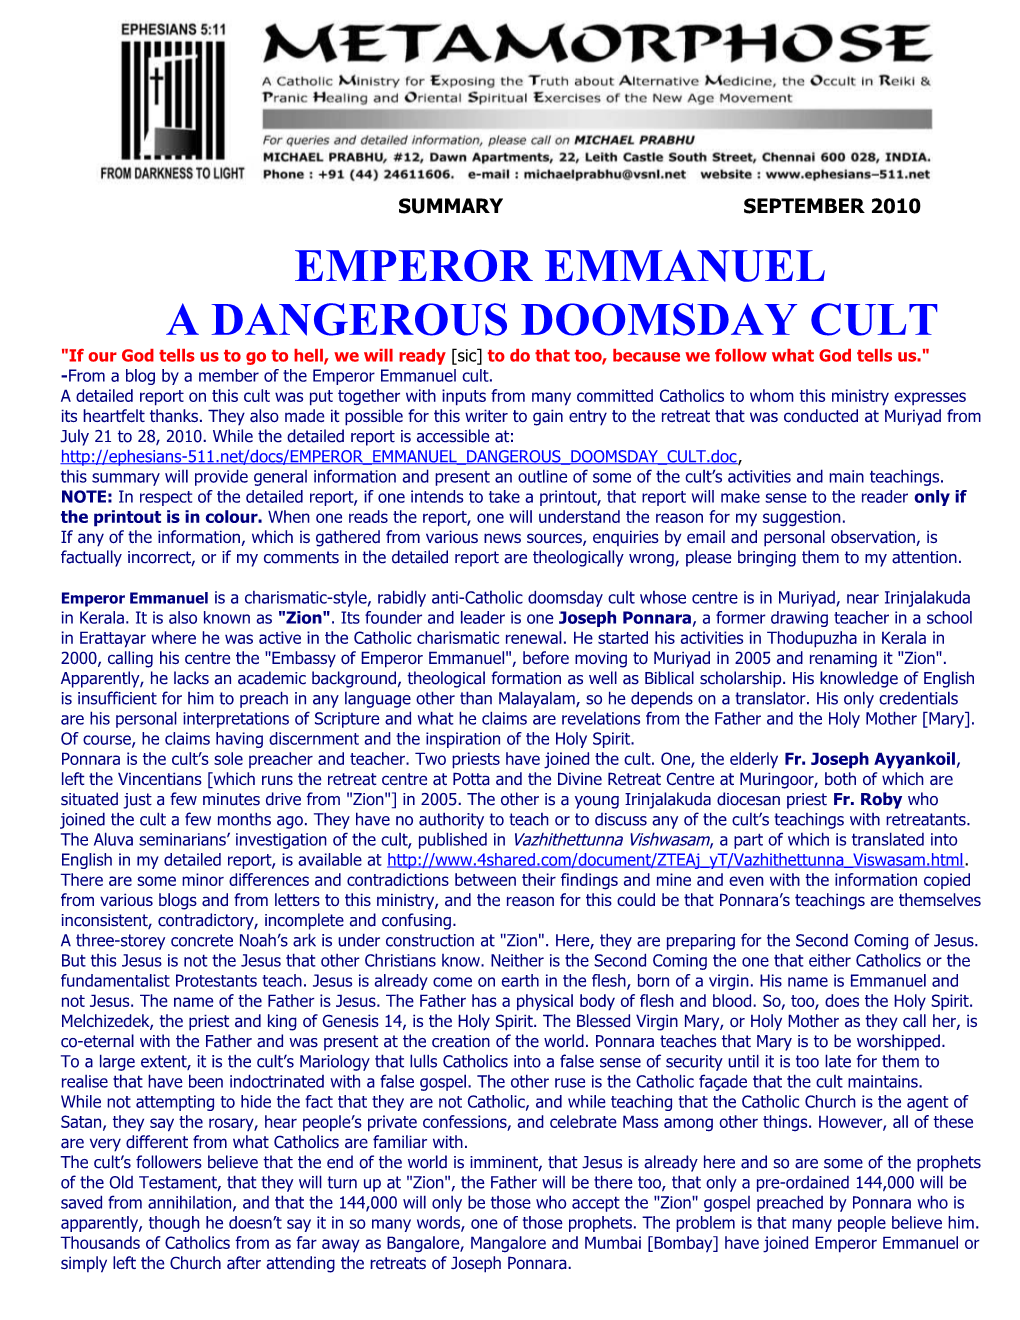 A Dangerous Doomsday Cult